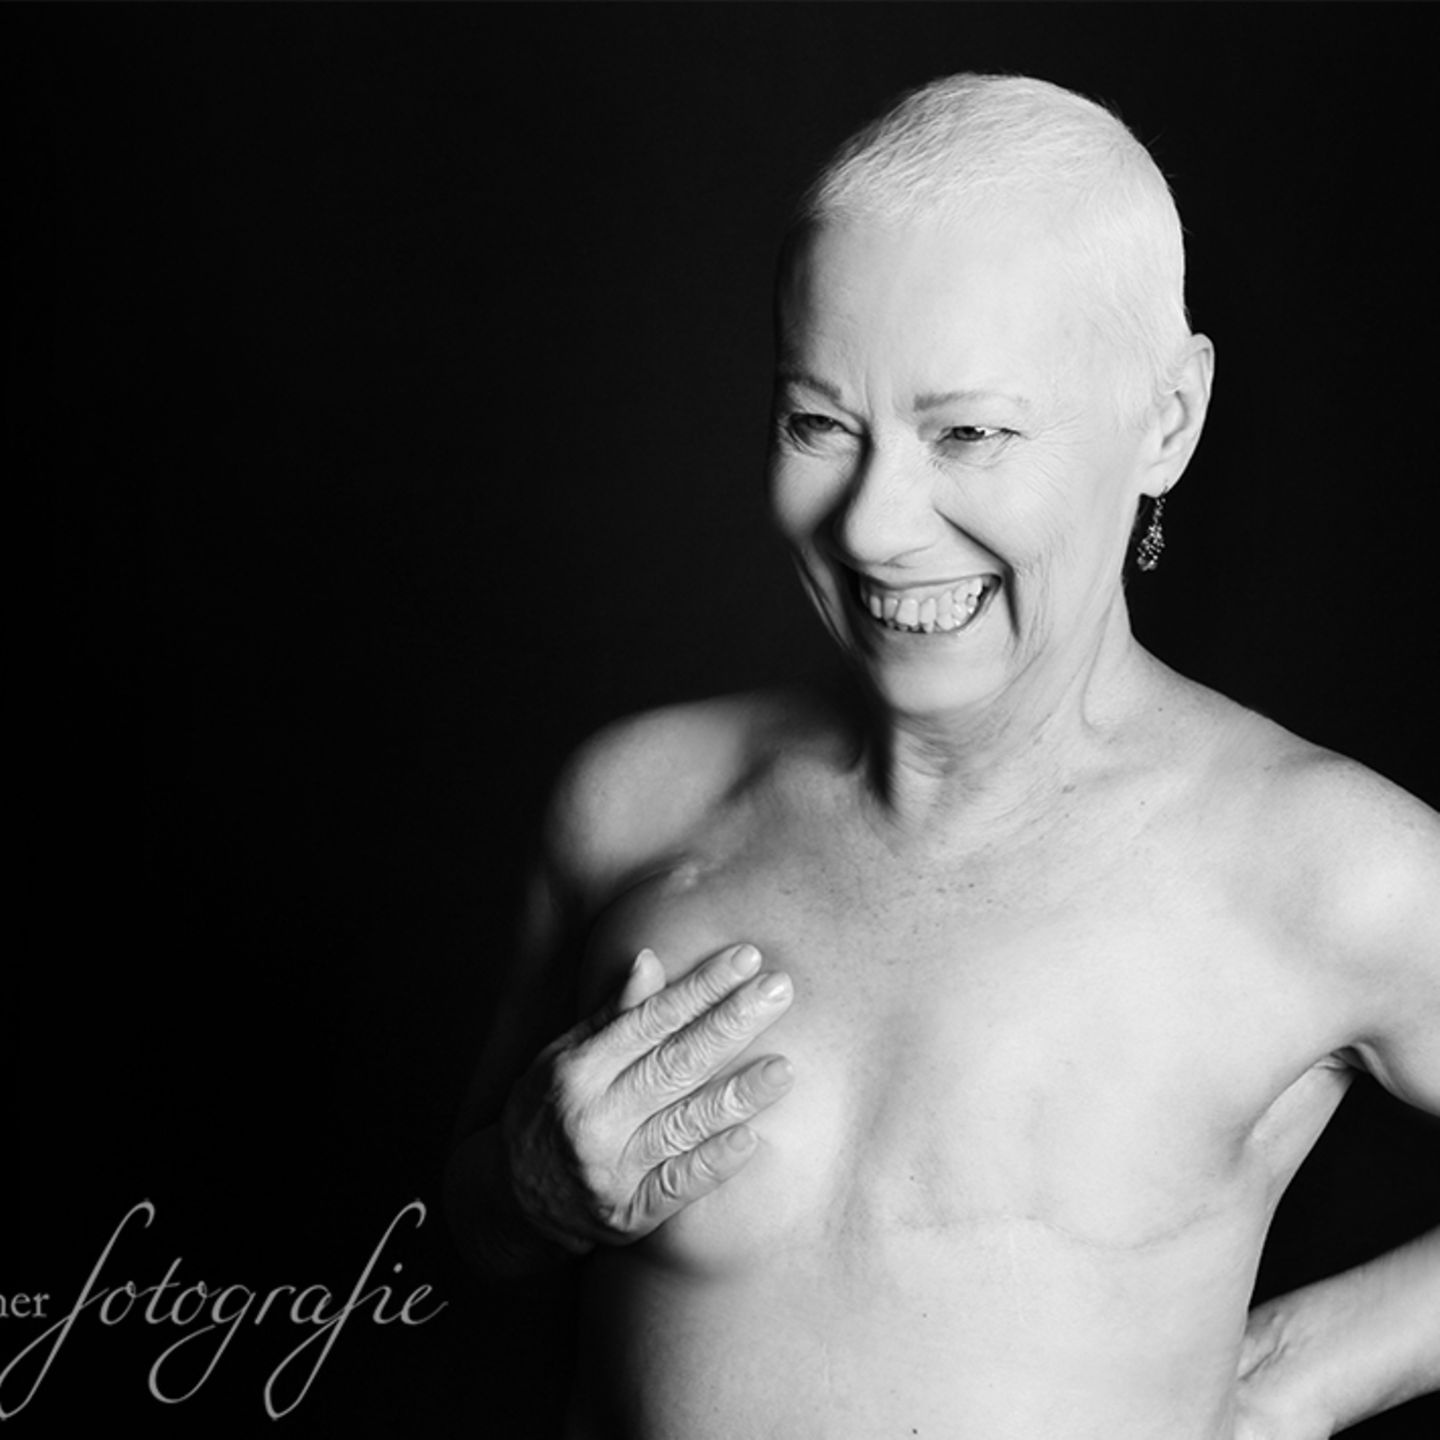 Fotoprojekt: Diese Frauen sind schön und stark. Und sie haben Krebs.